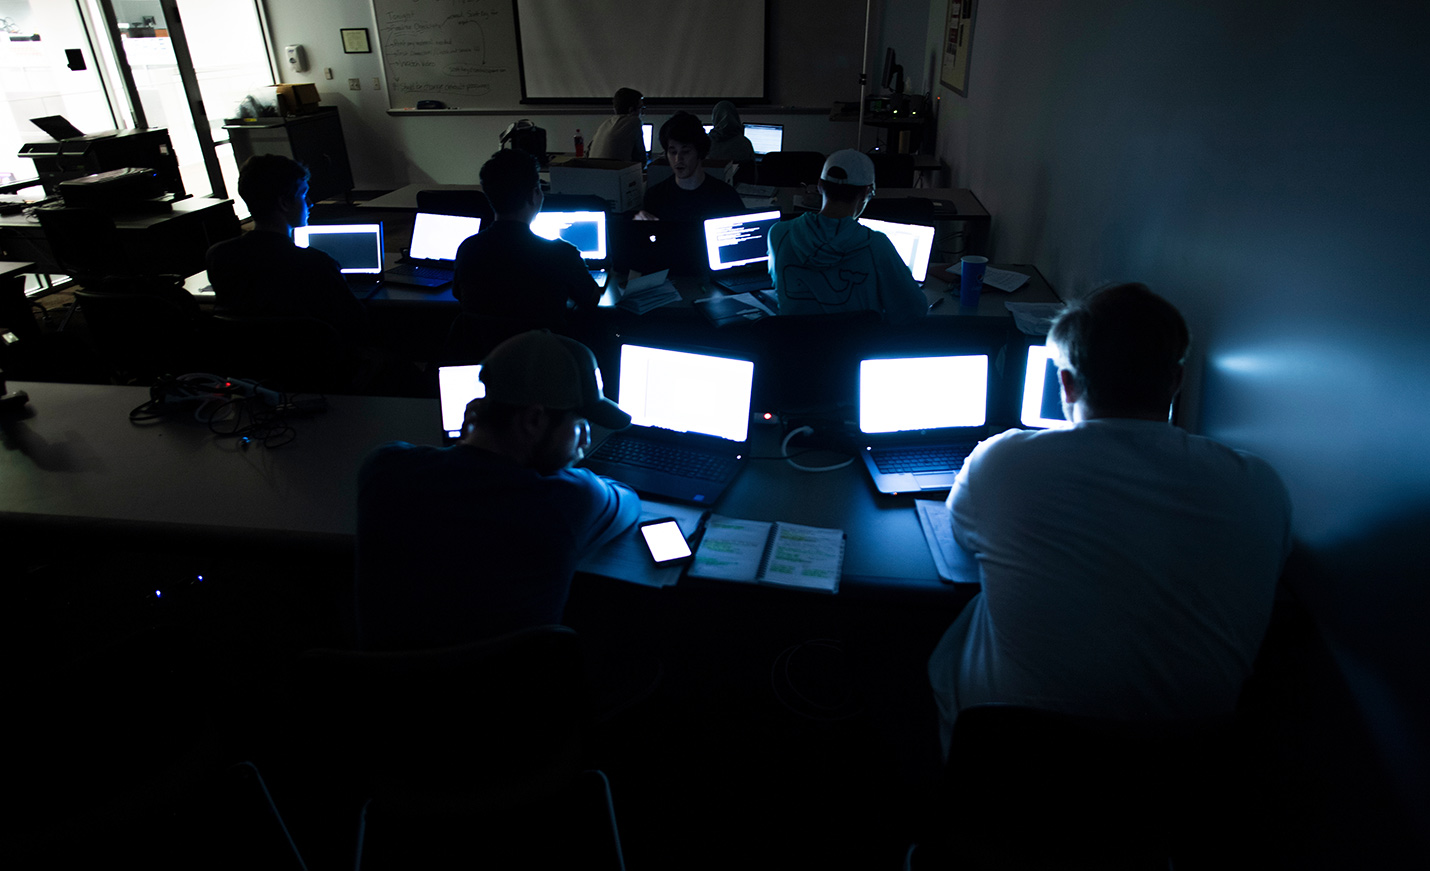 computers in dark classroom